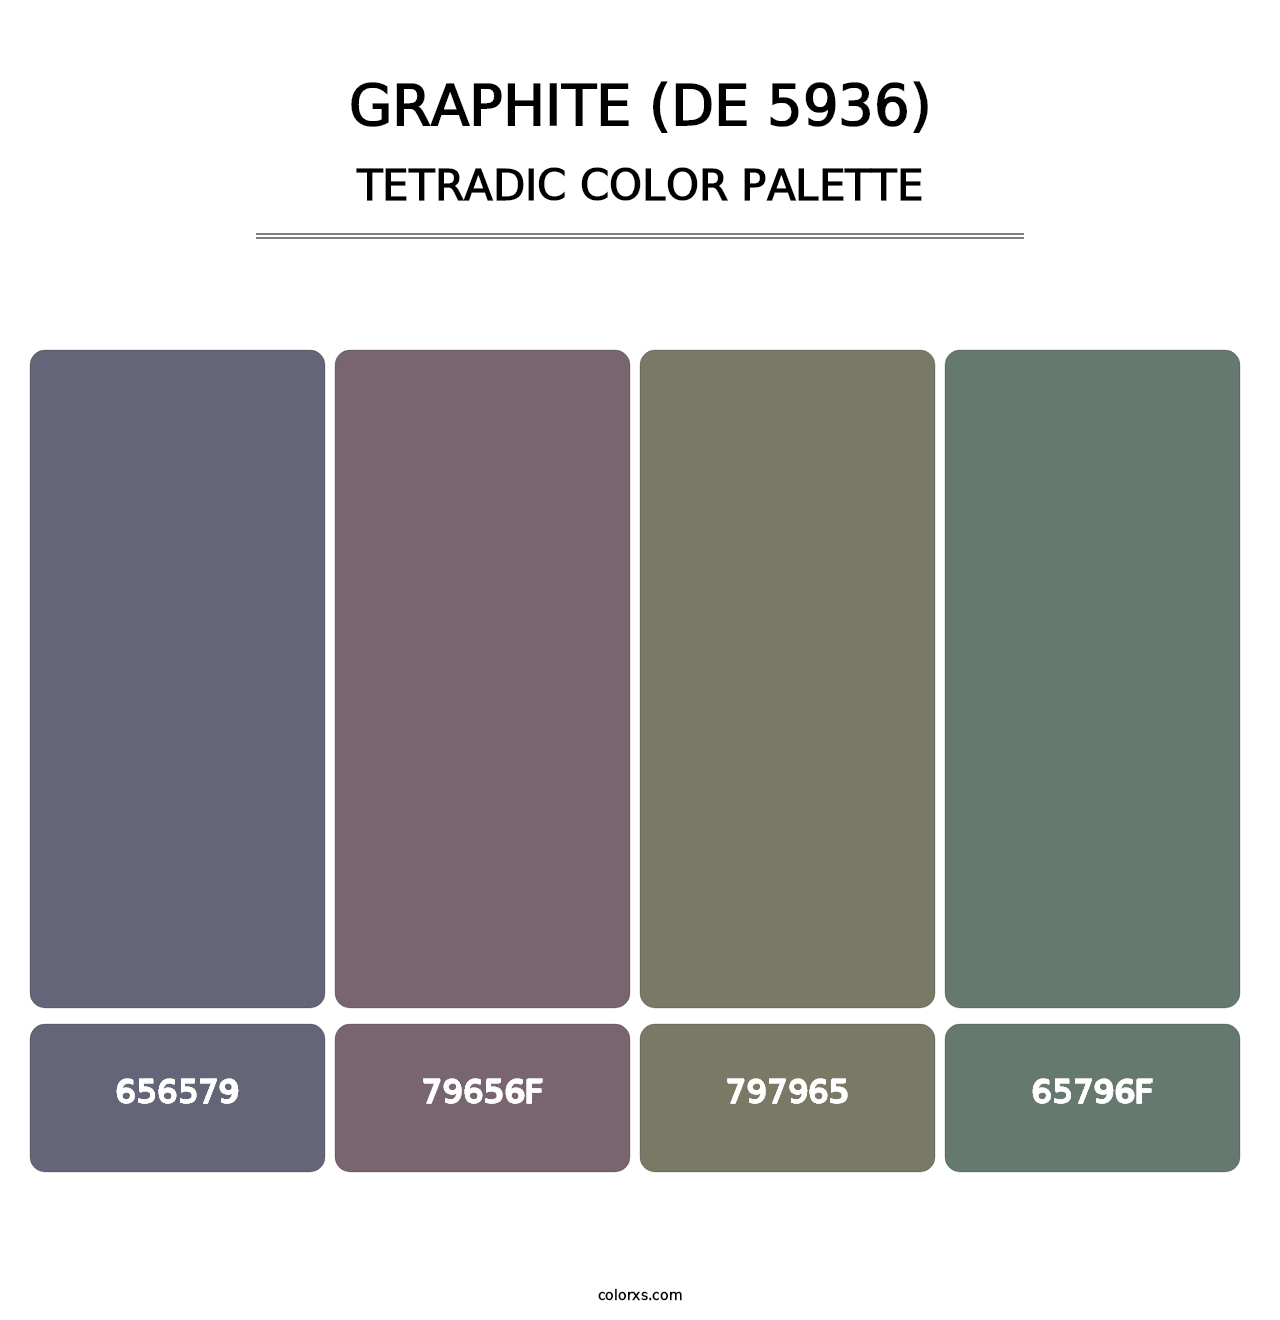 Graphite (DE 5936) - Tetradic Color Palette